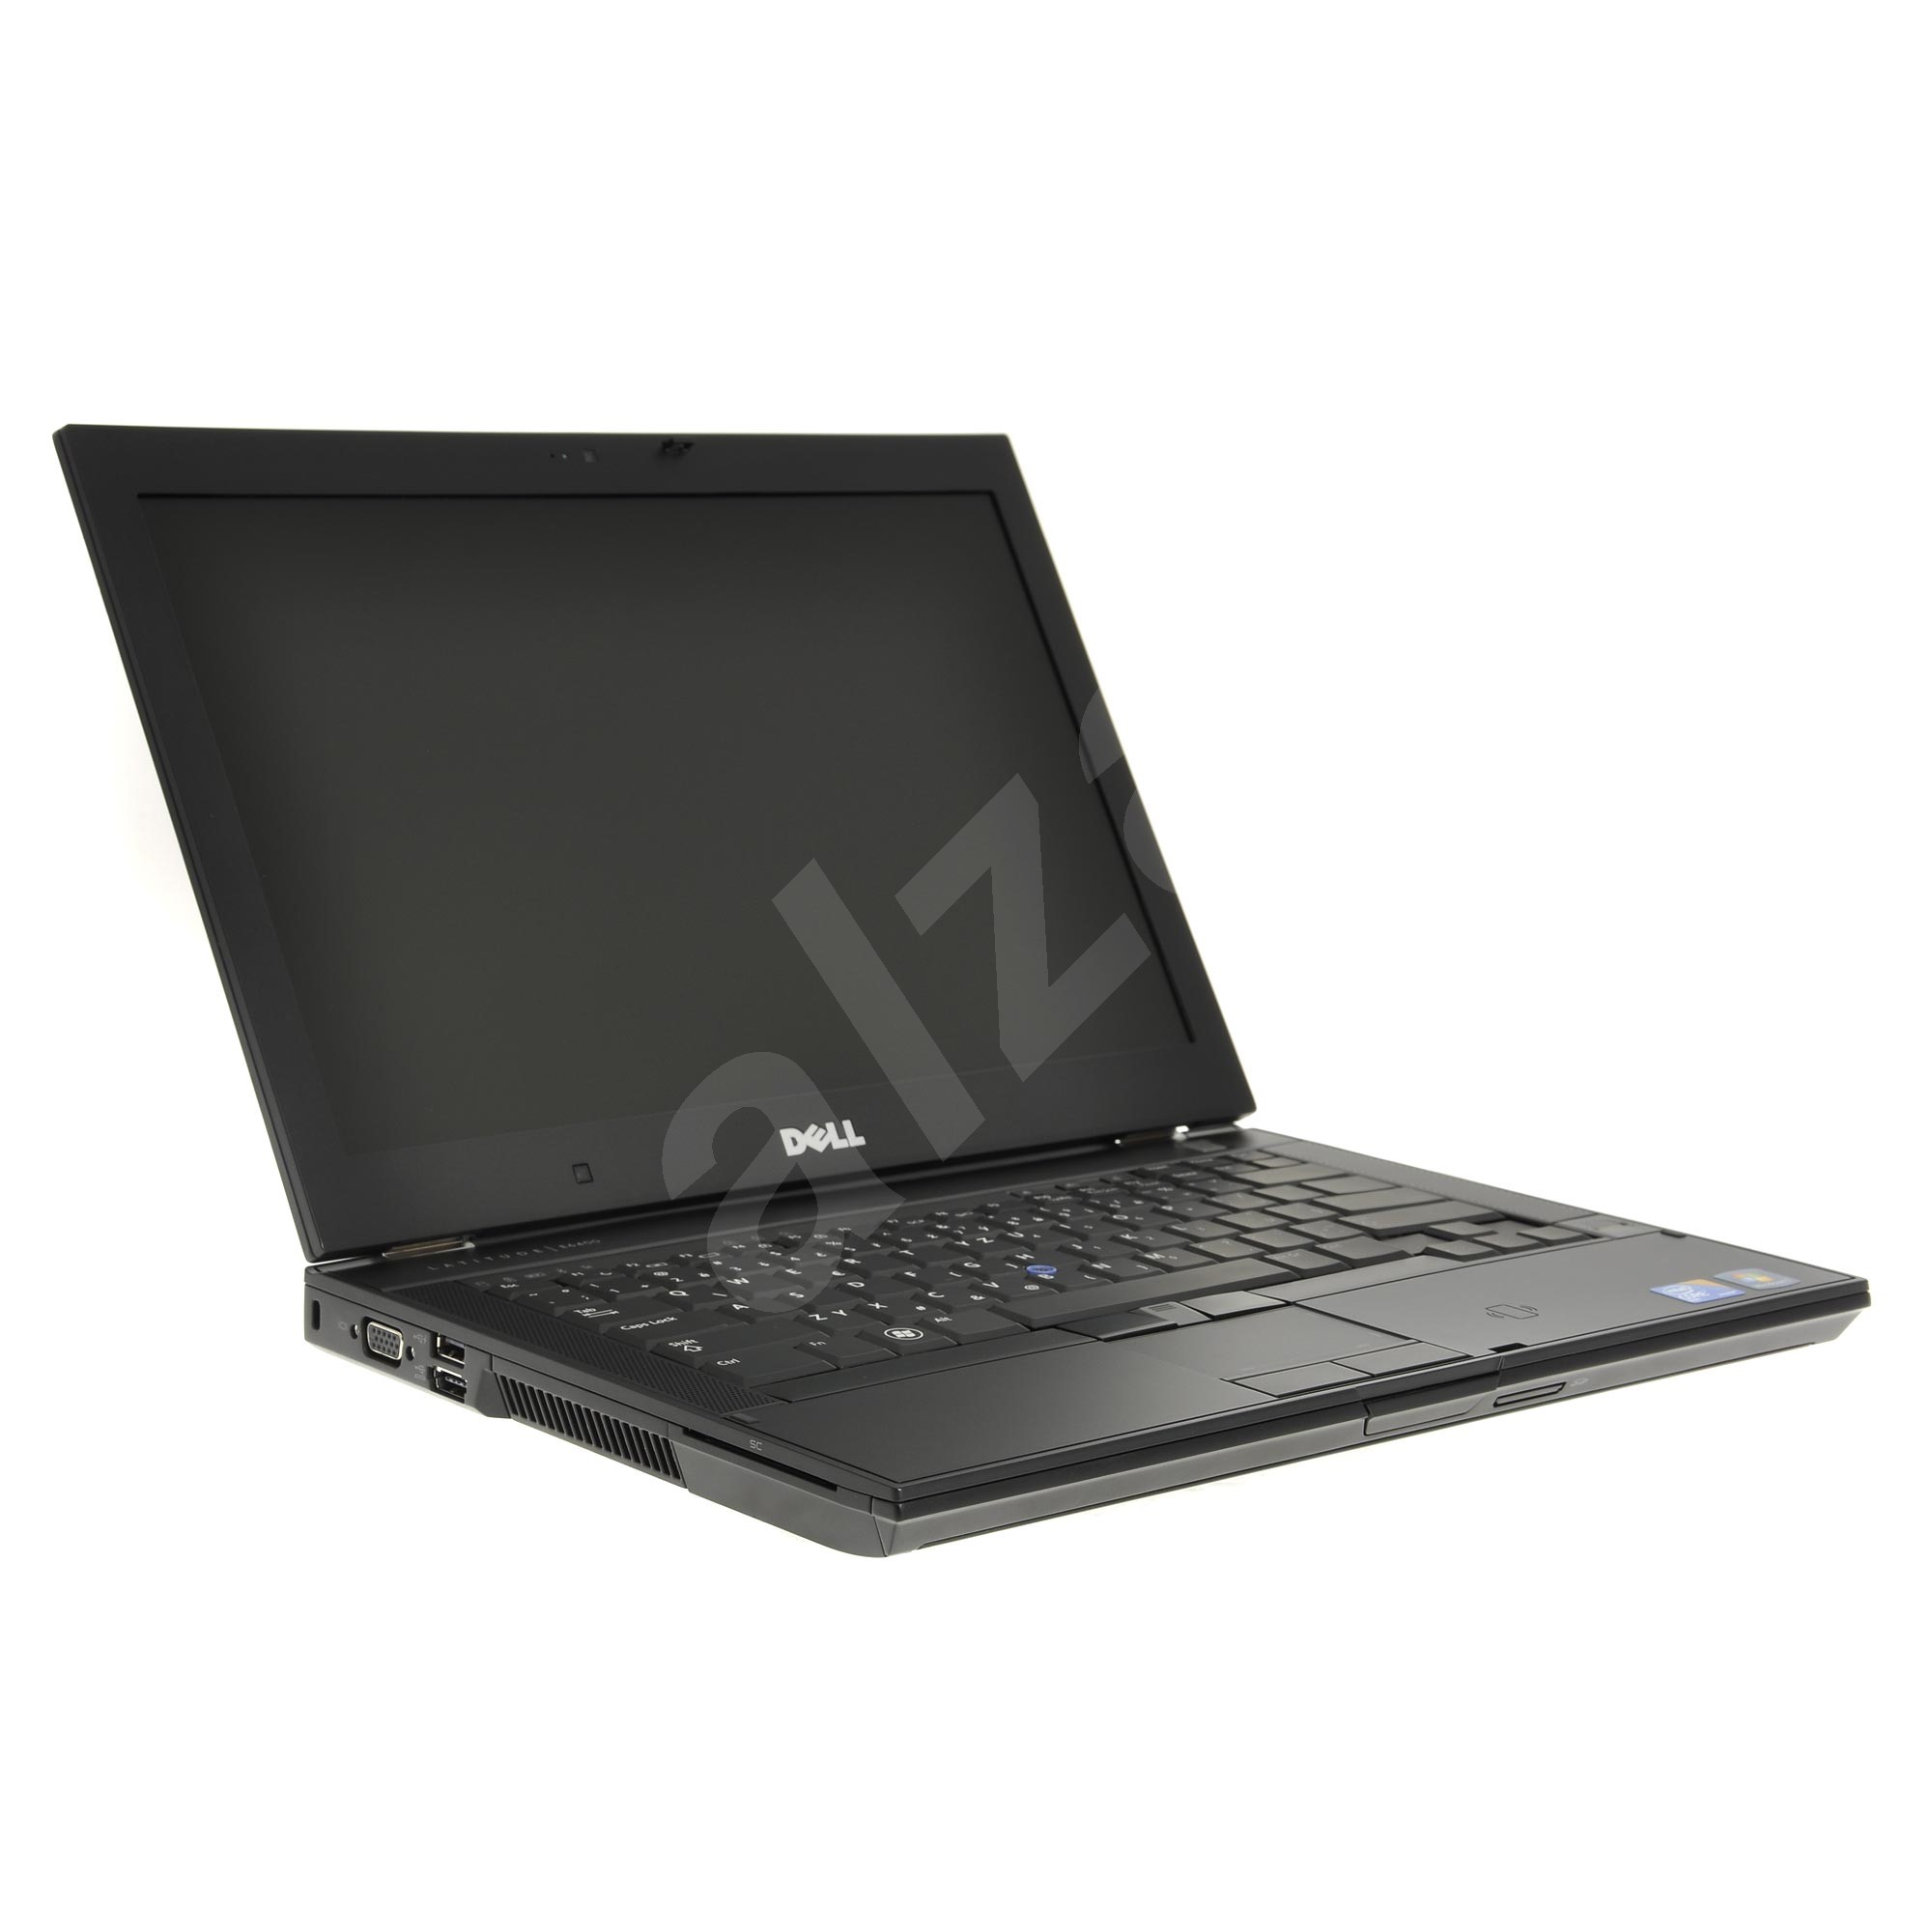 Dell Latitude E6400 - Notebook | Alza.cz